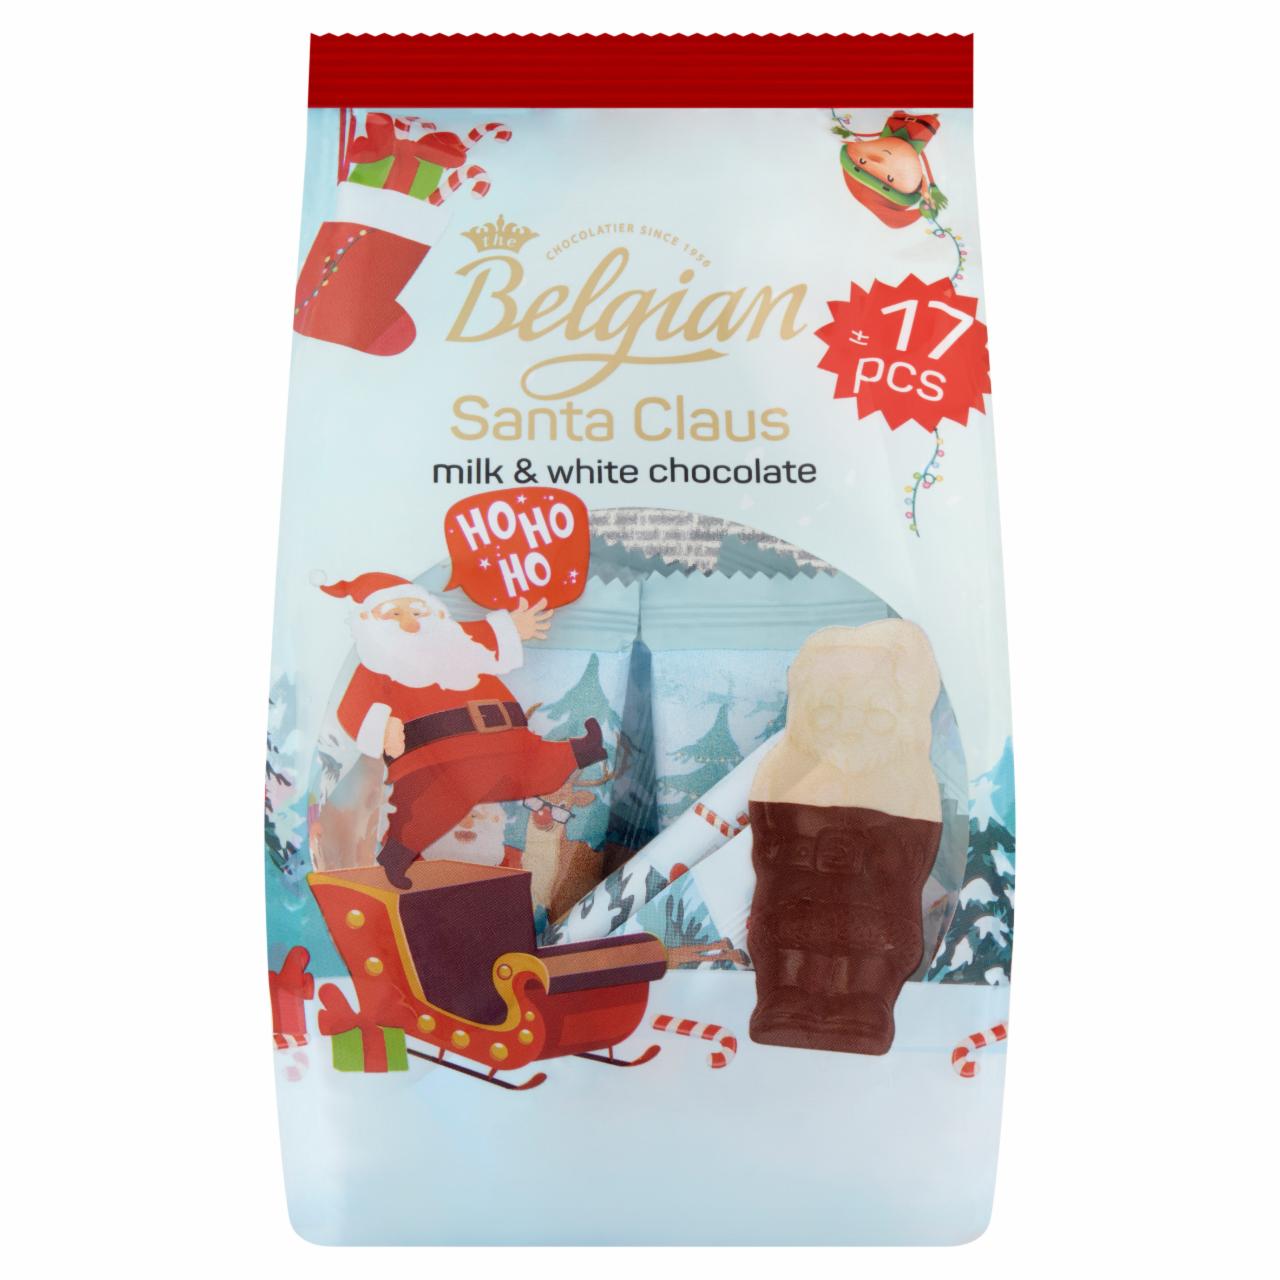 Zdjęcia - The Belgian Santa Claus Czekolada mleczna i biała czekolada 153 g